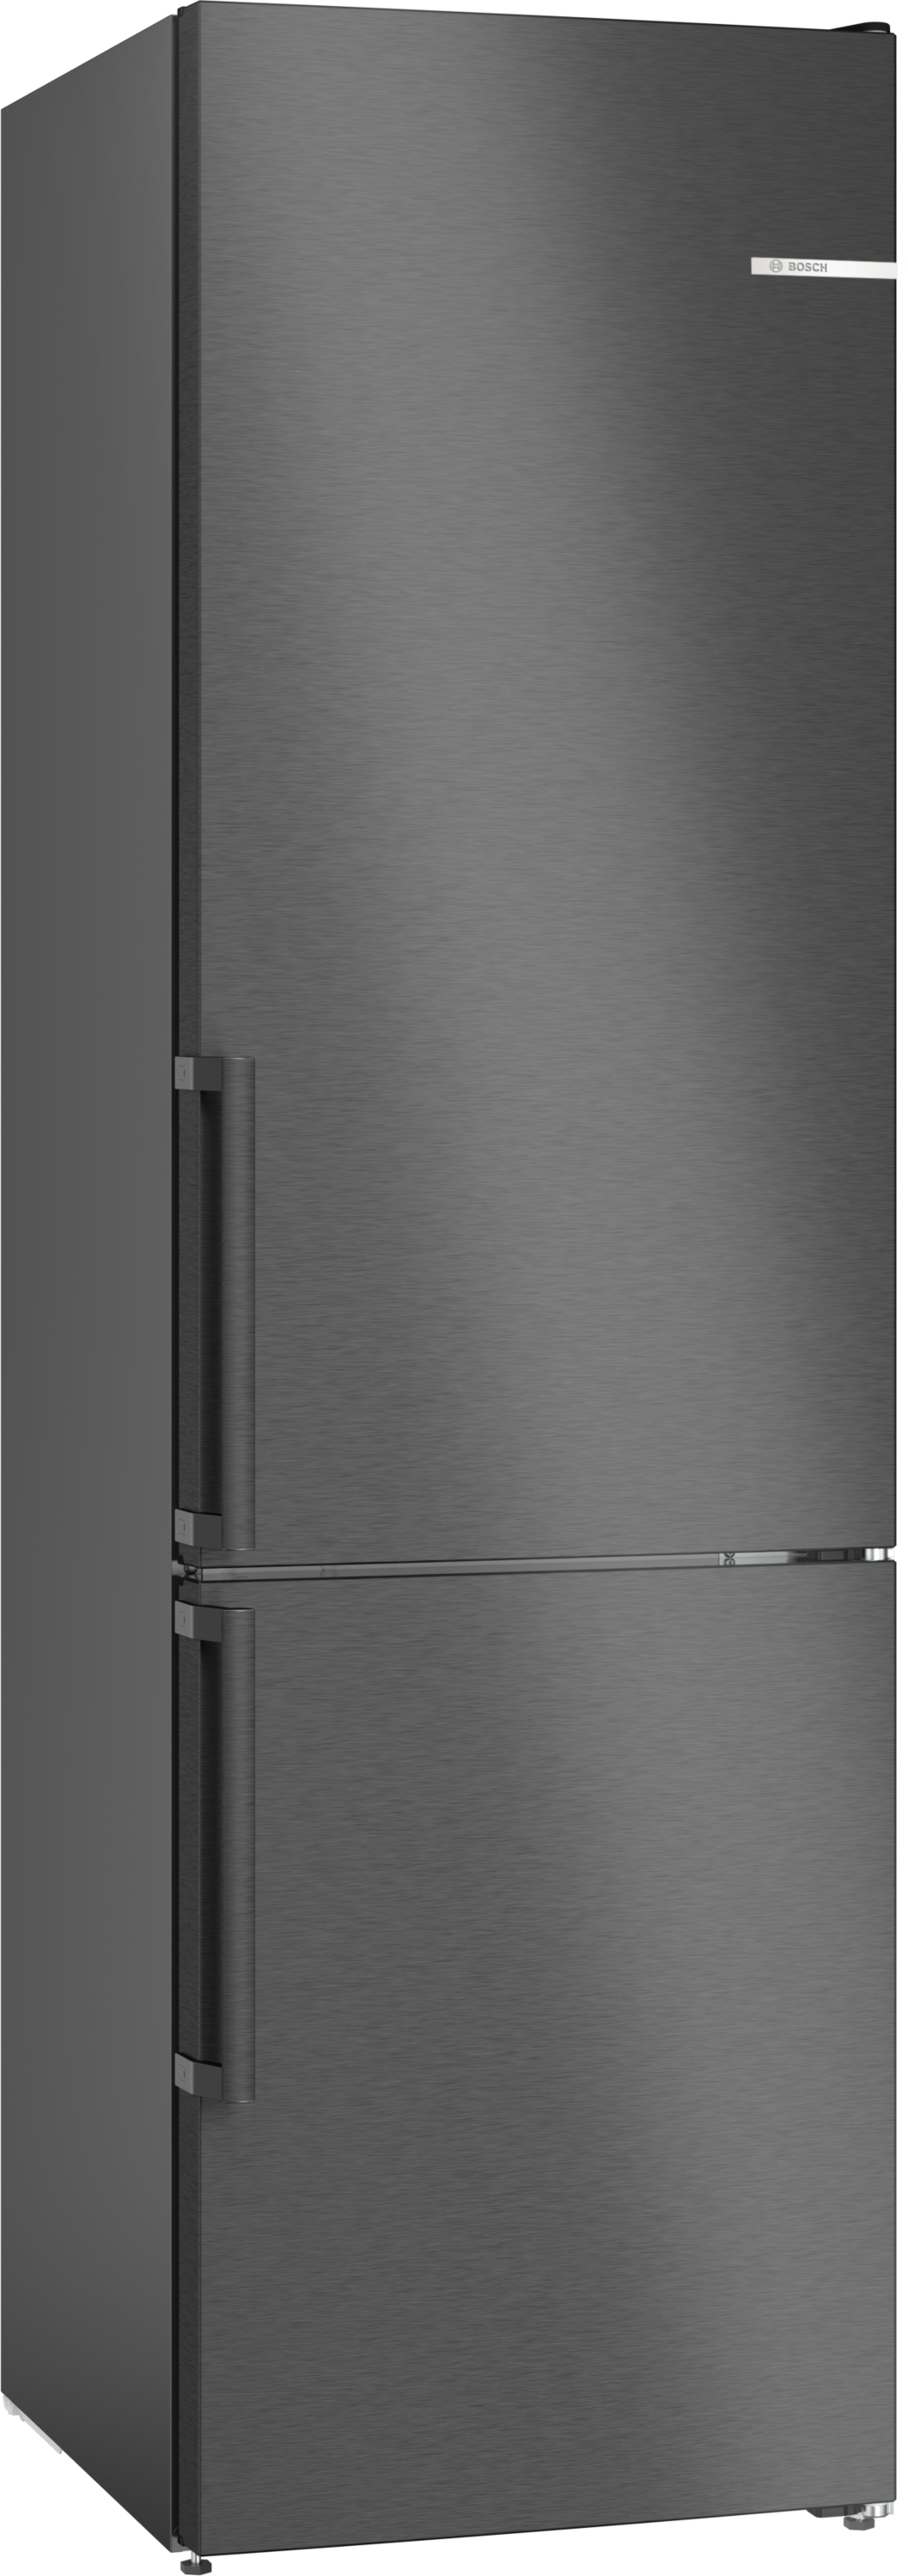 Bosch Serie 4, Freistehende Kühl-Gefrier-Kombination mit Gefrierbereich unten, 203 x 60 cm, Edelstahl schwarz, KGN39VXBT